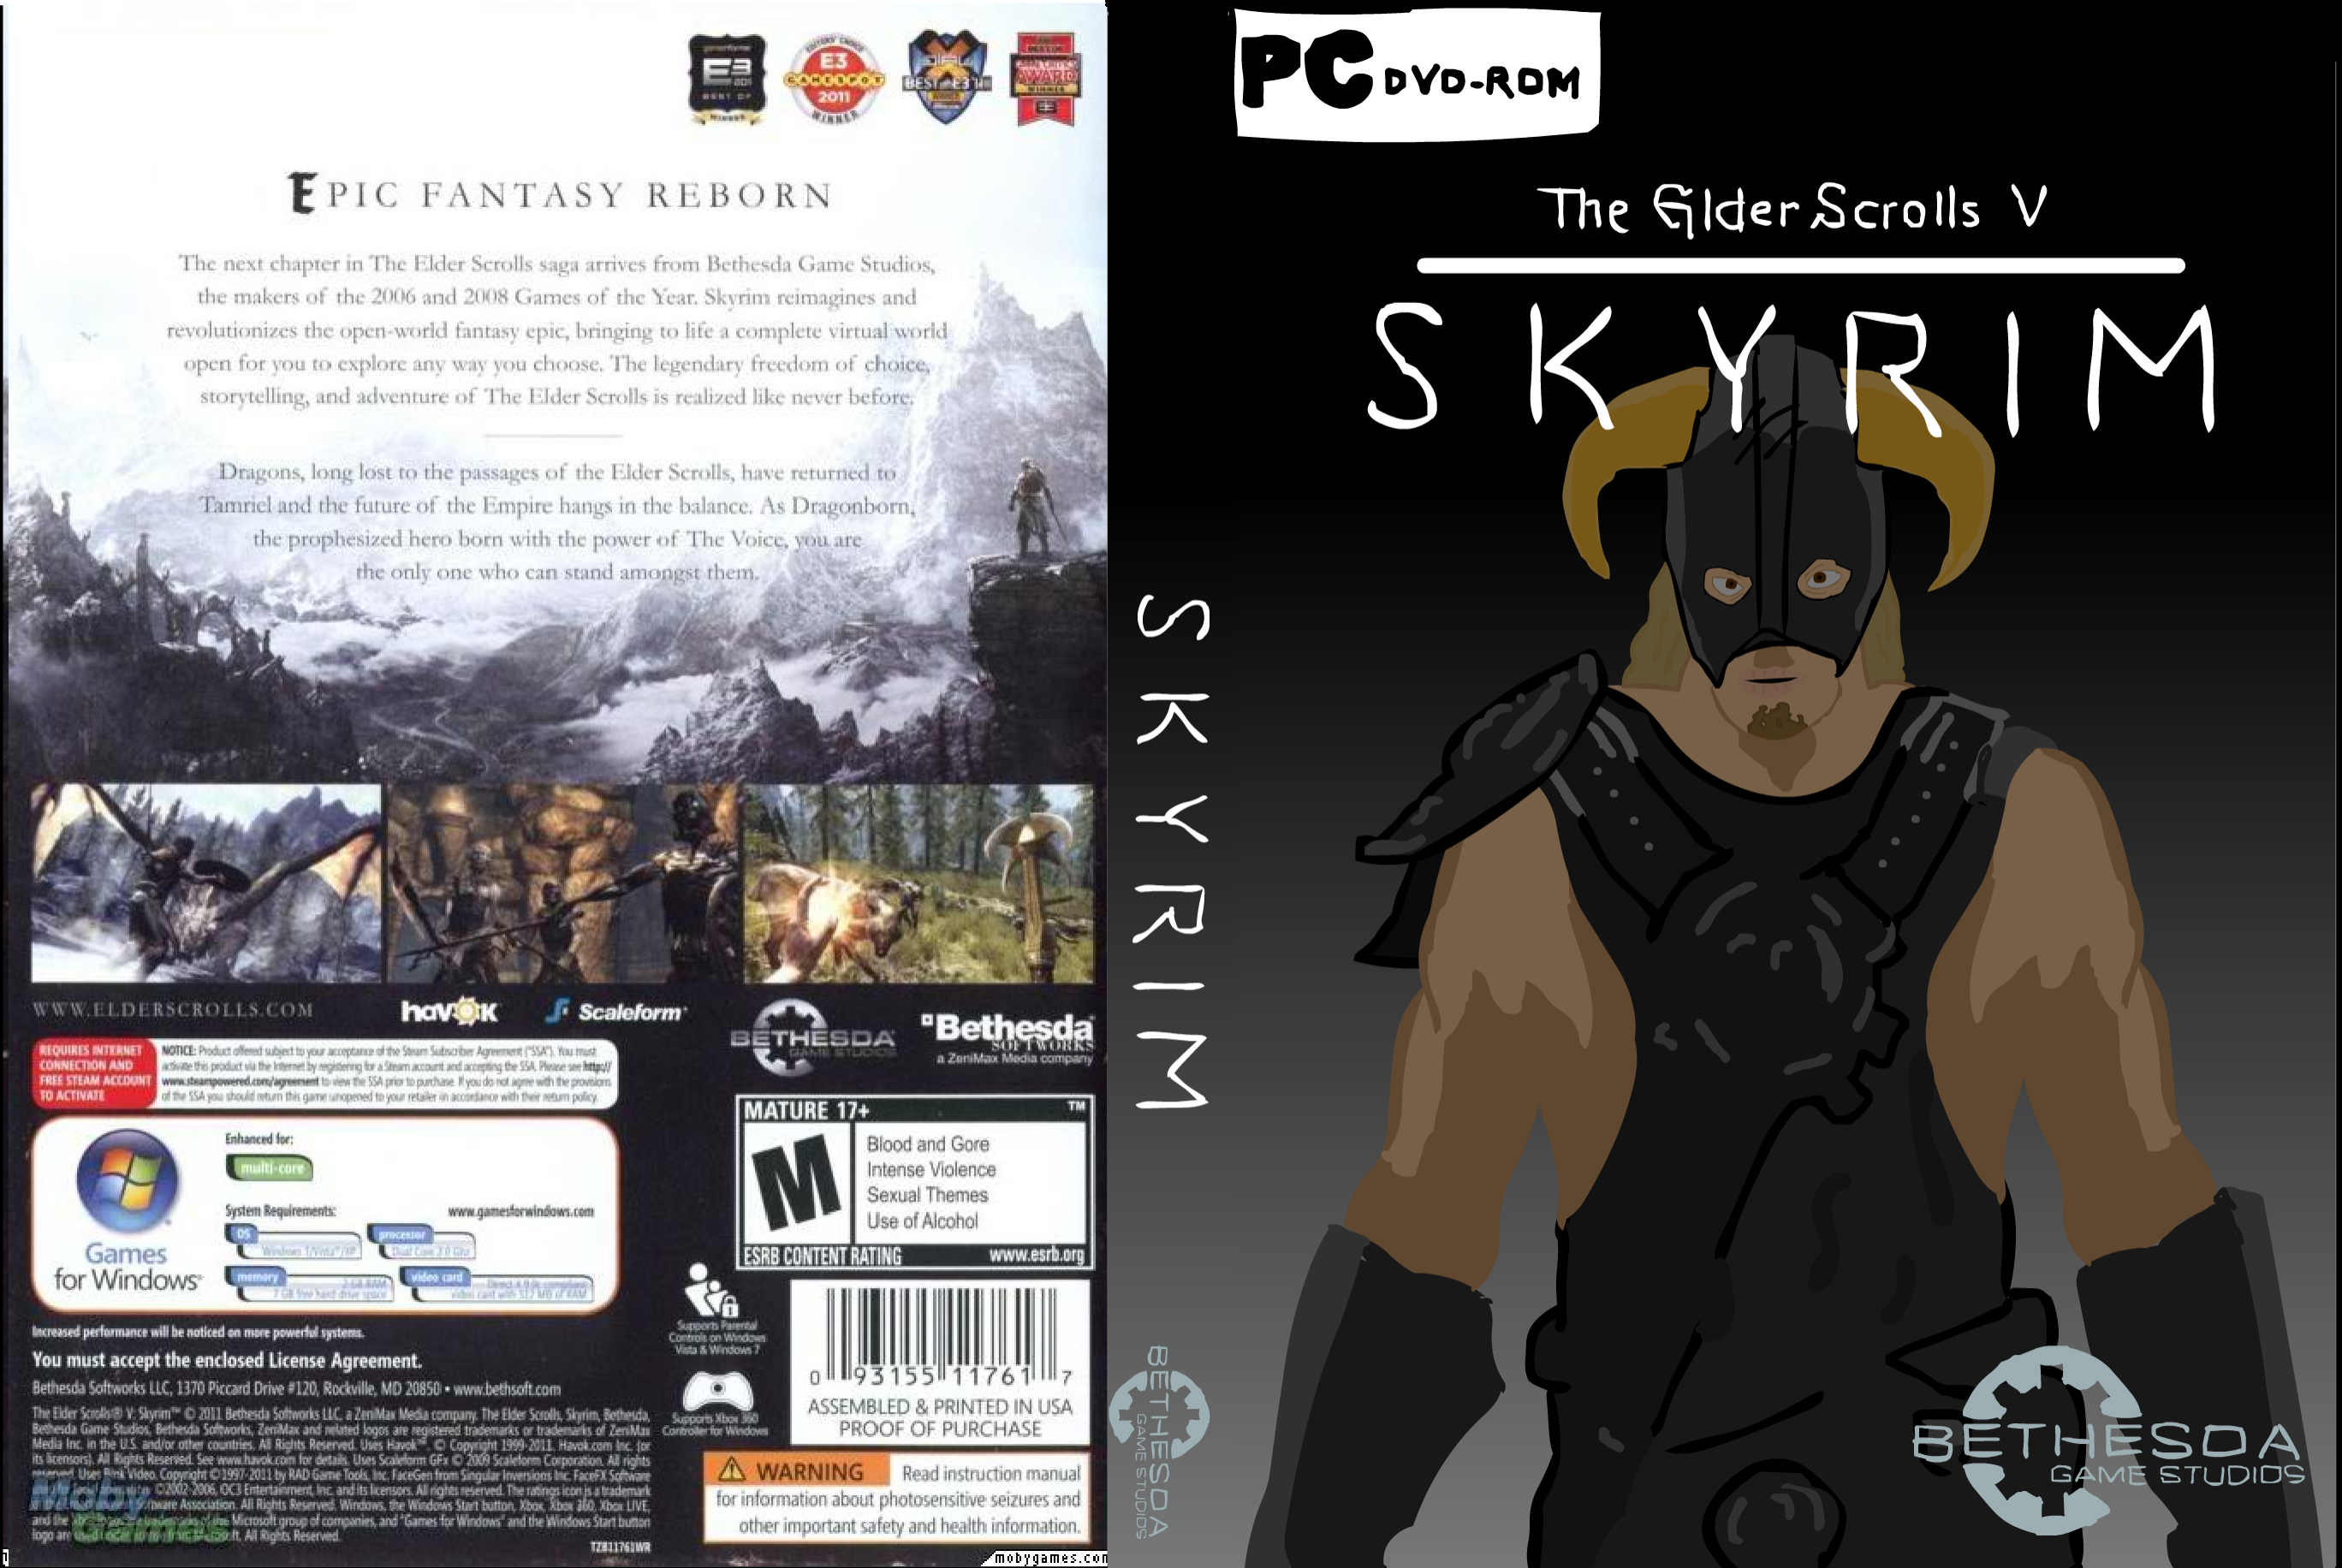 The Elder Scrolls V: Skyrim Cartoon box cover